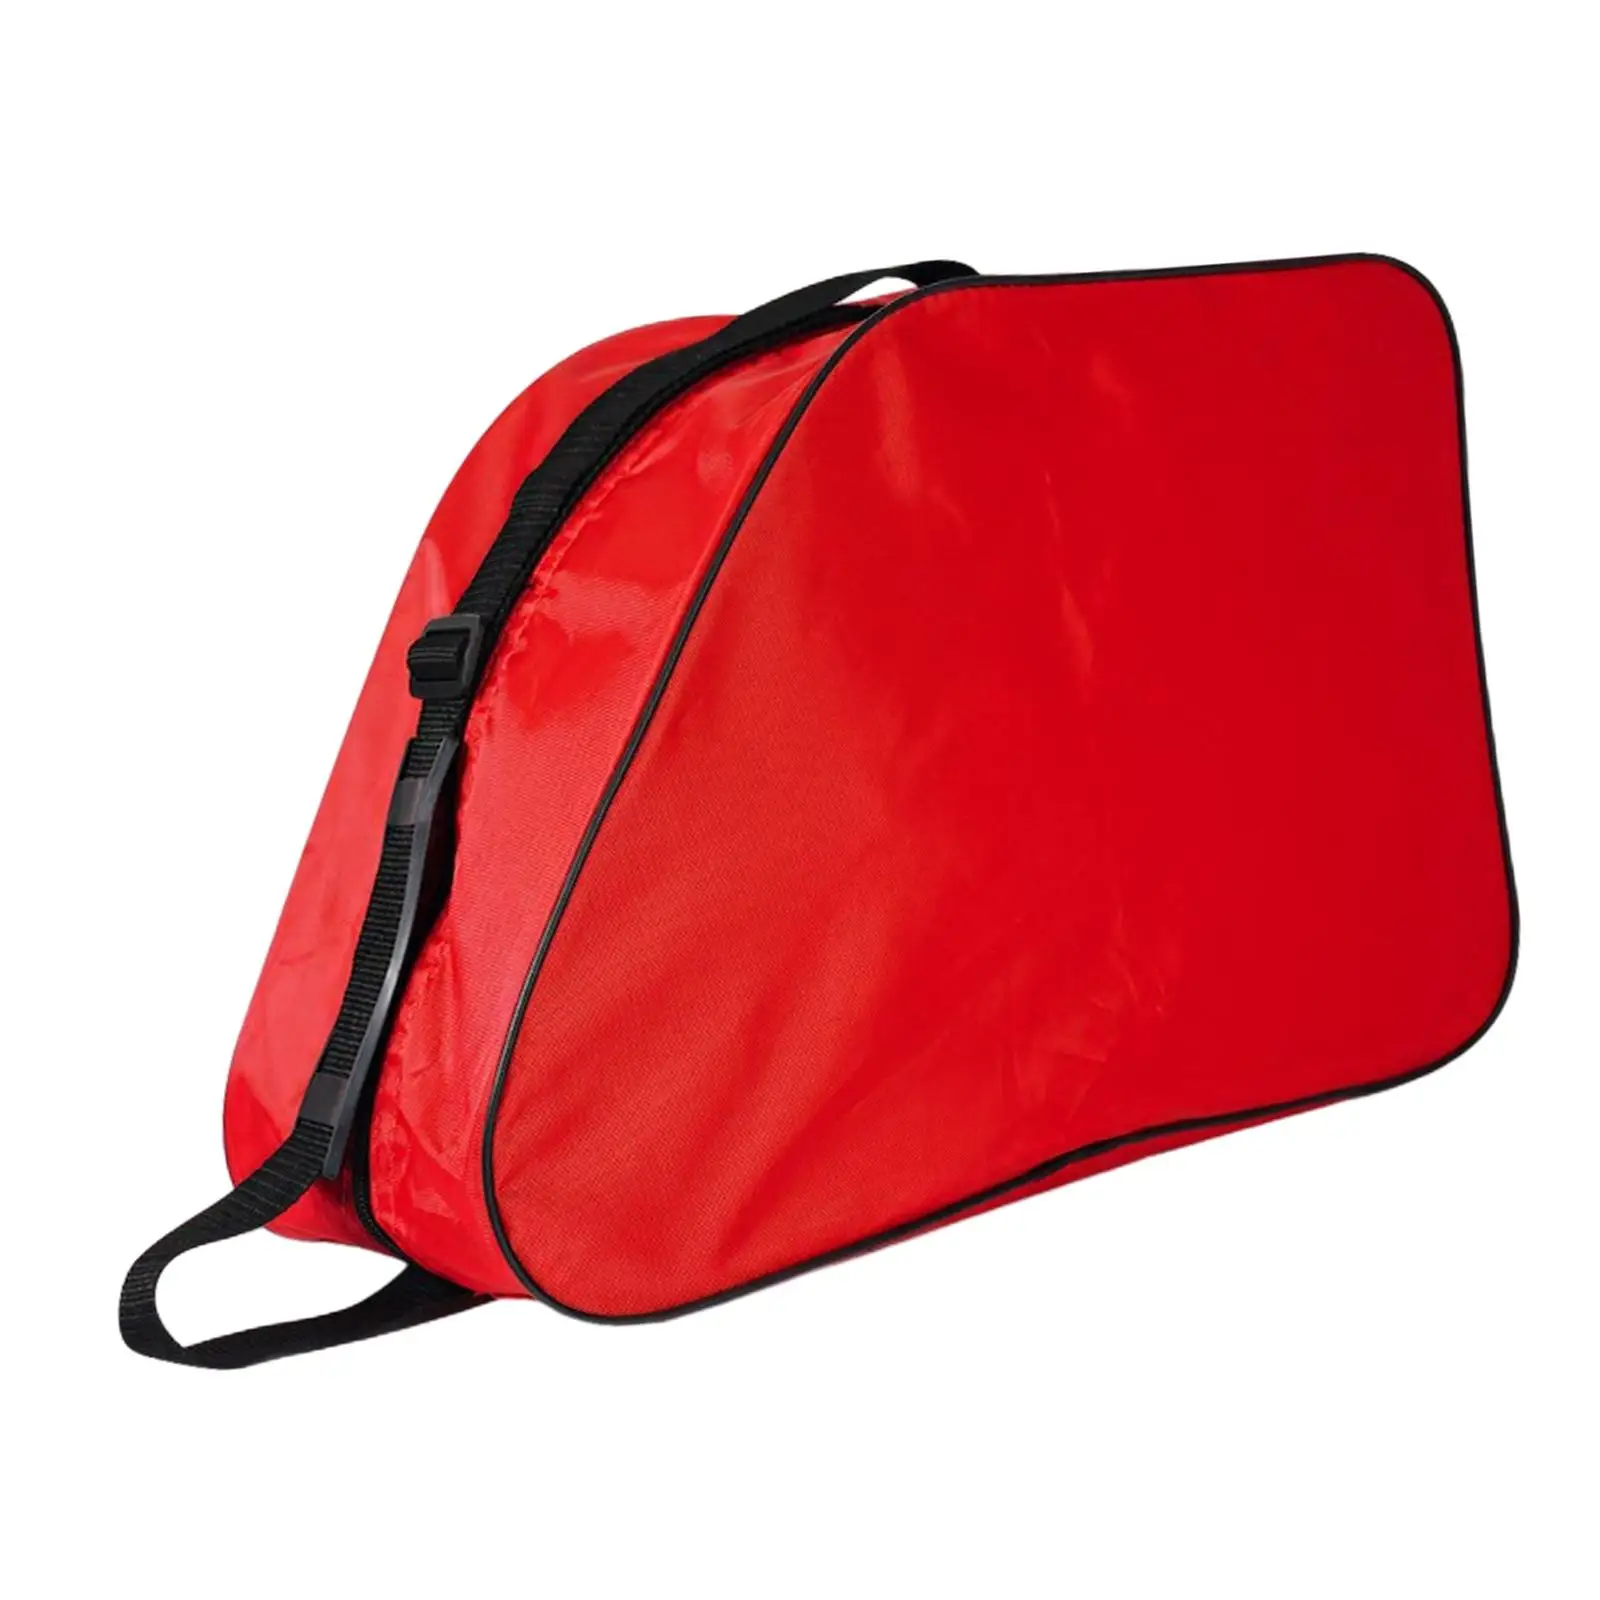 Roller Skate Bag Skate Carry Bag with Shoulder Strap Skating Shoes Bag Ice Skating Bag for Inline Skates Skate Accessories